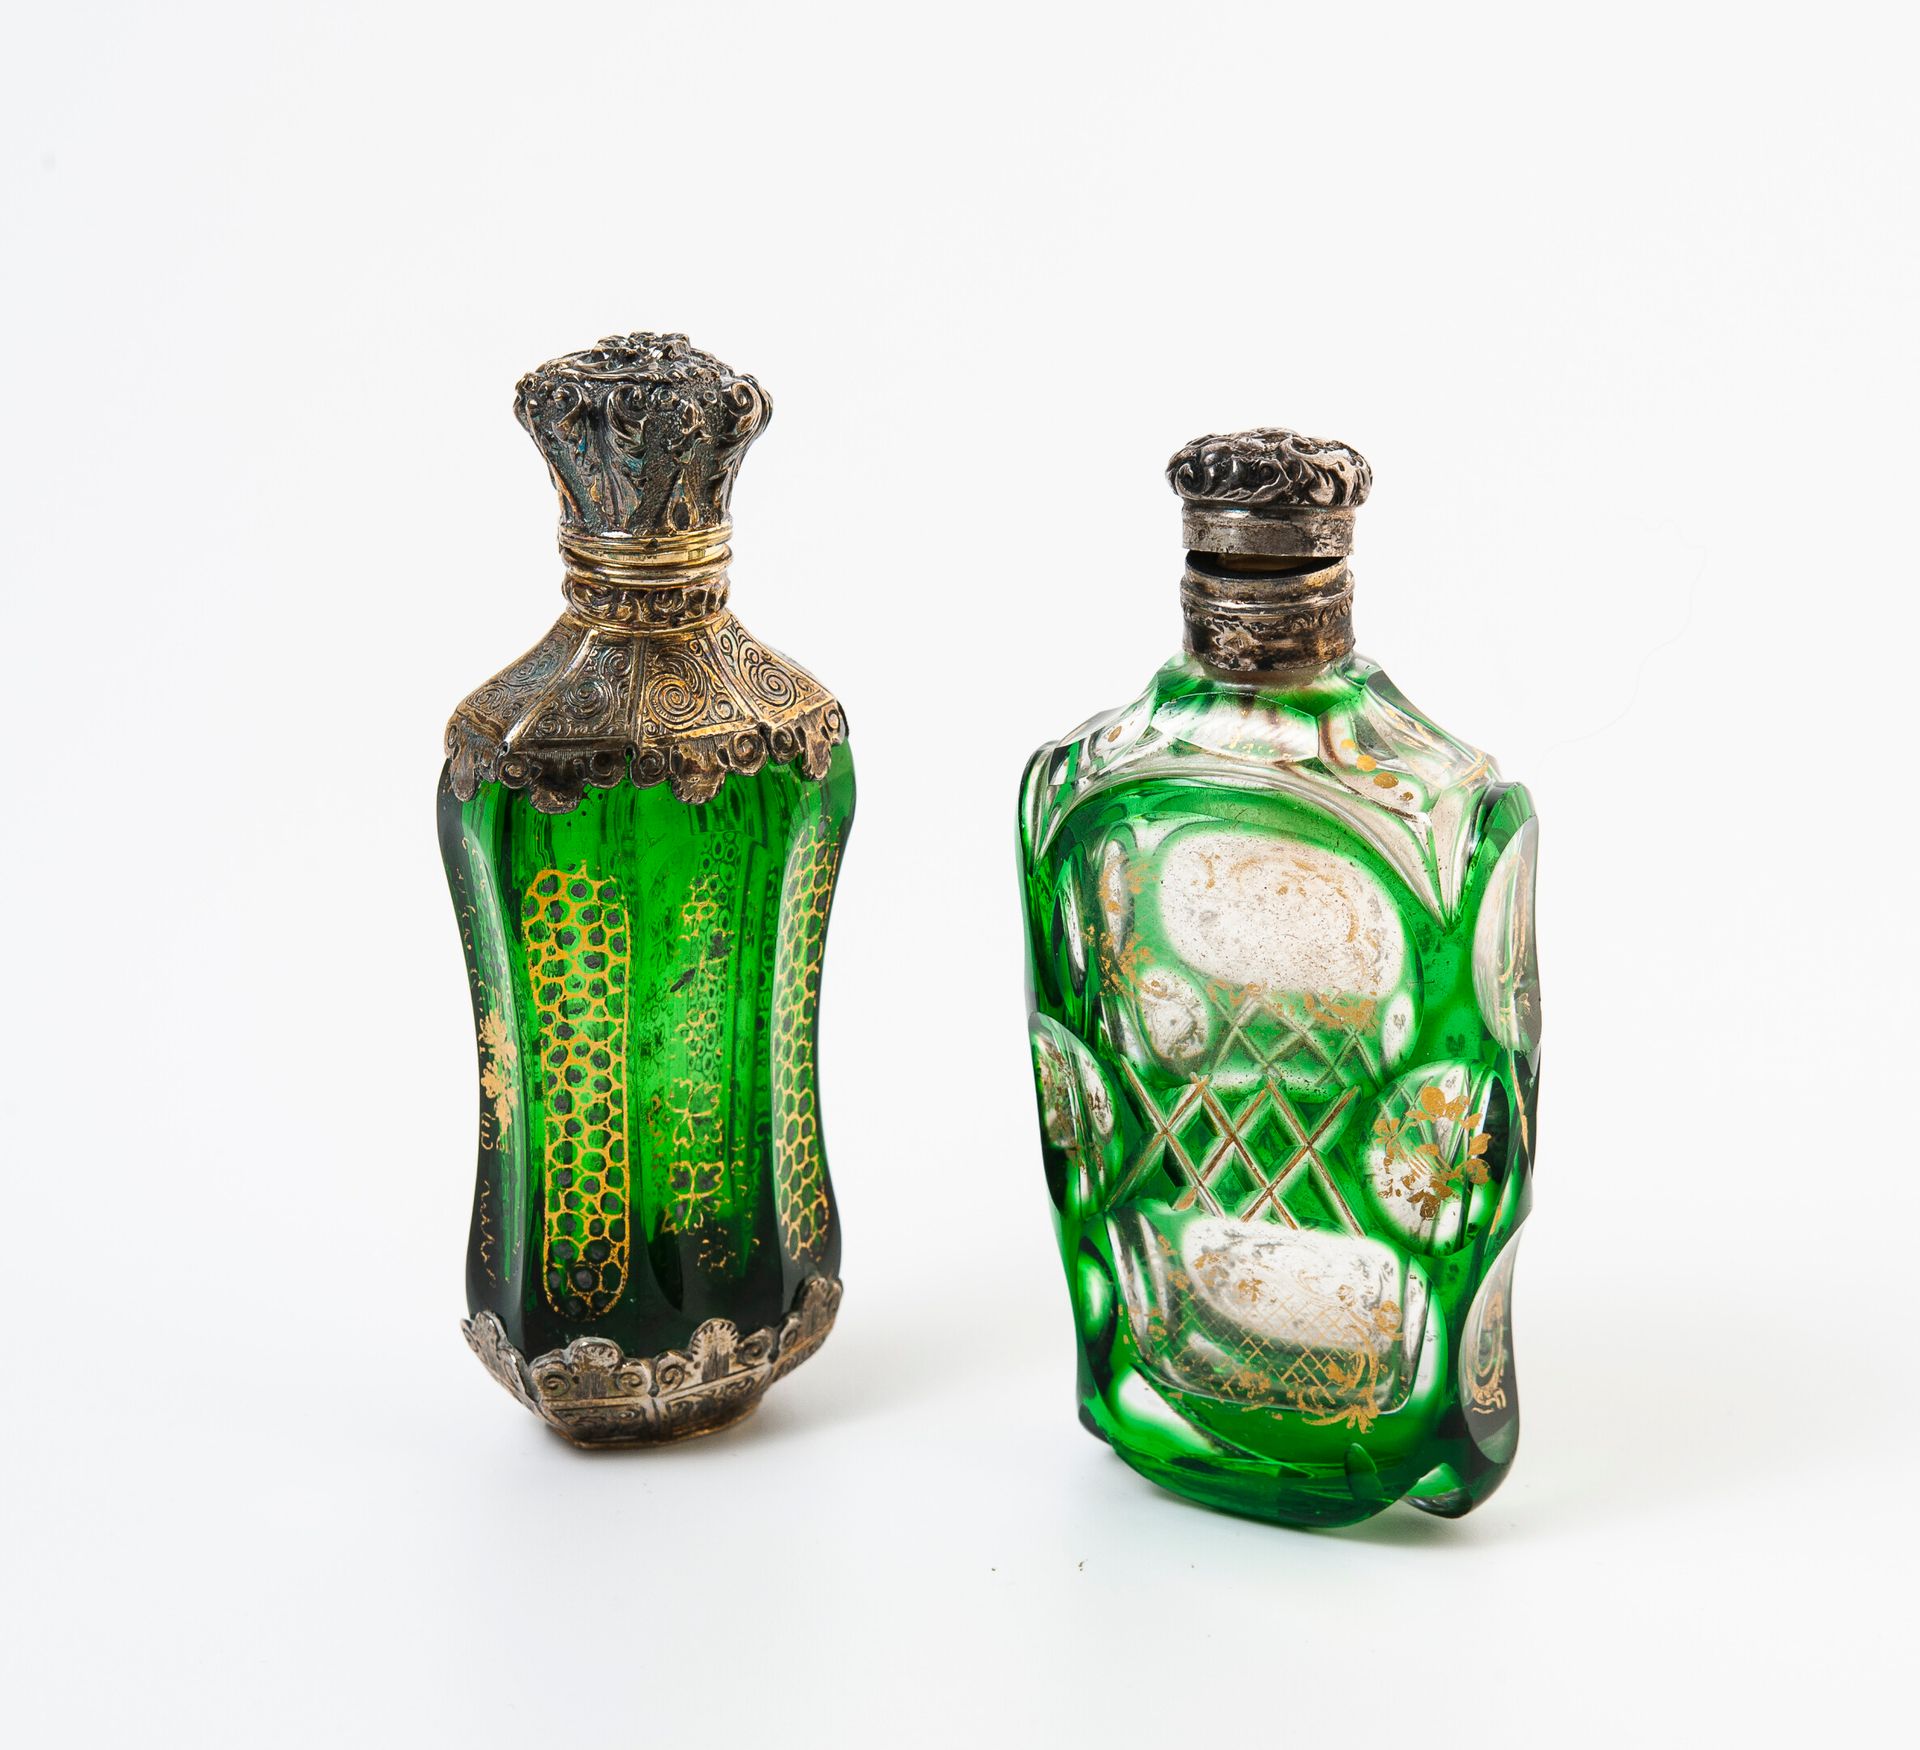 FRANCE, seconde moitié du XIXème siècle Zwei Salzflaschen:

- eine mit einem grü&hellip;